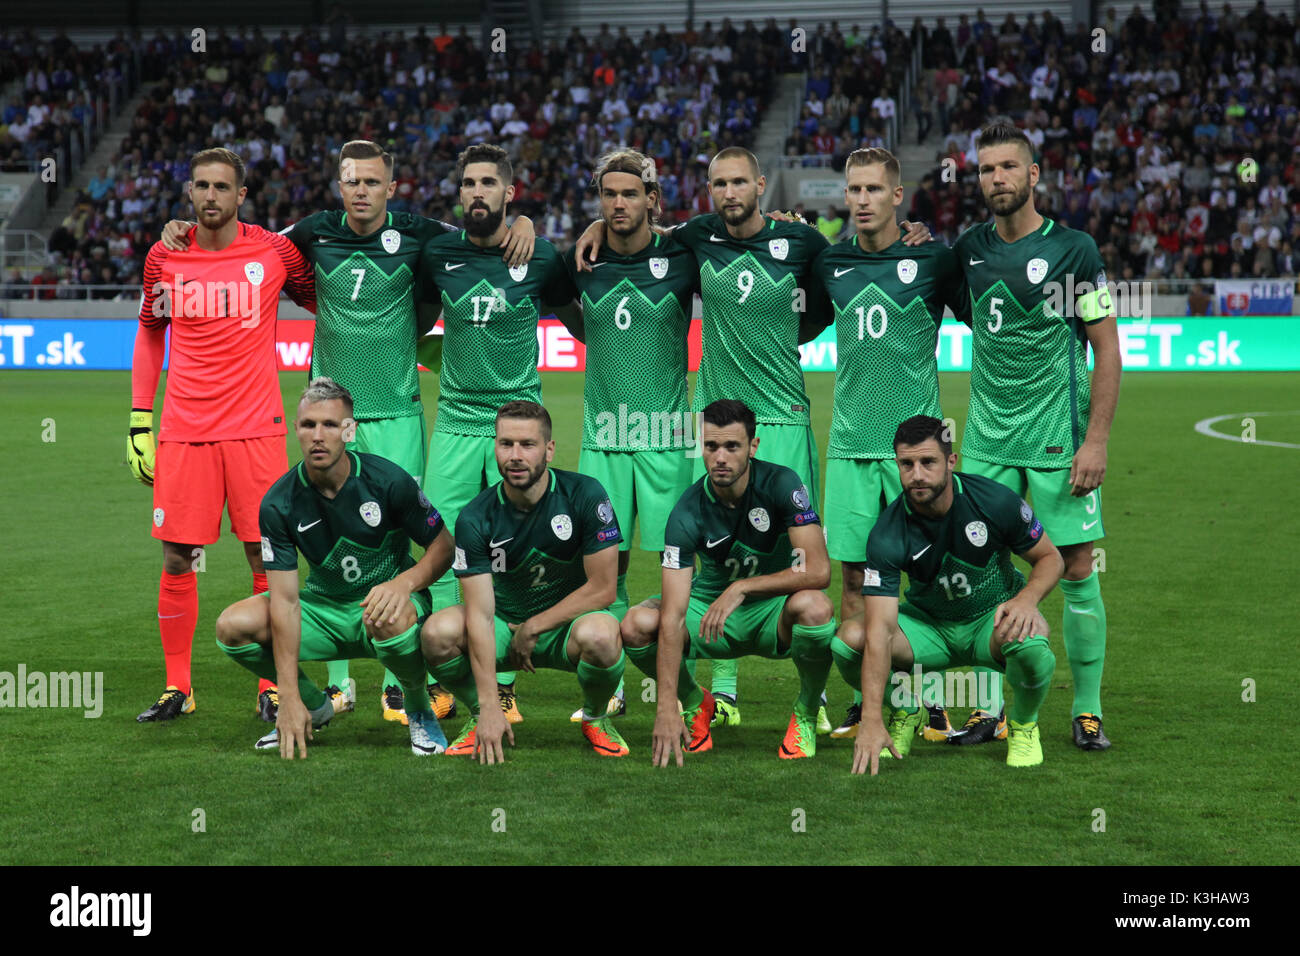 Slovenia national team -Fotos und -Bildmaterial in hoher Auflösung – Alamy